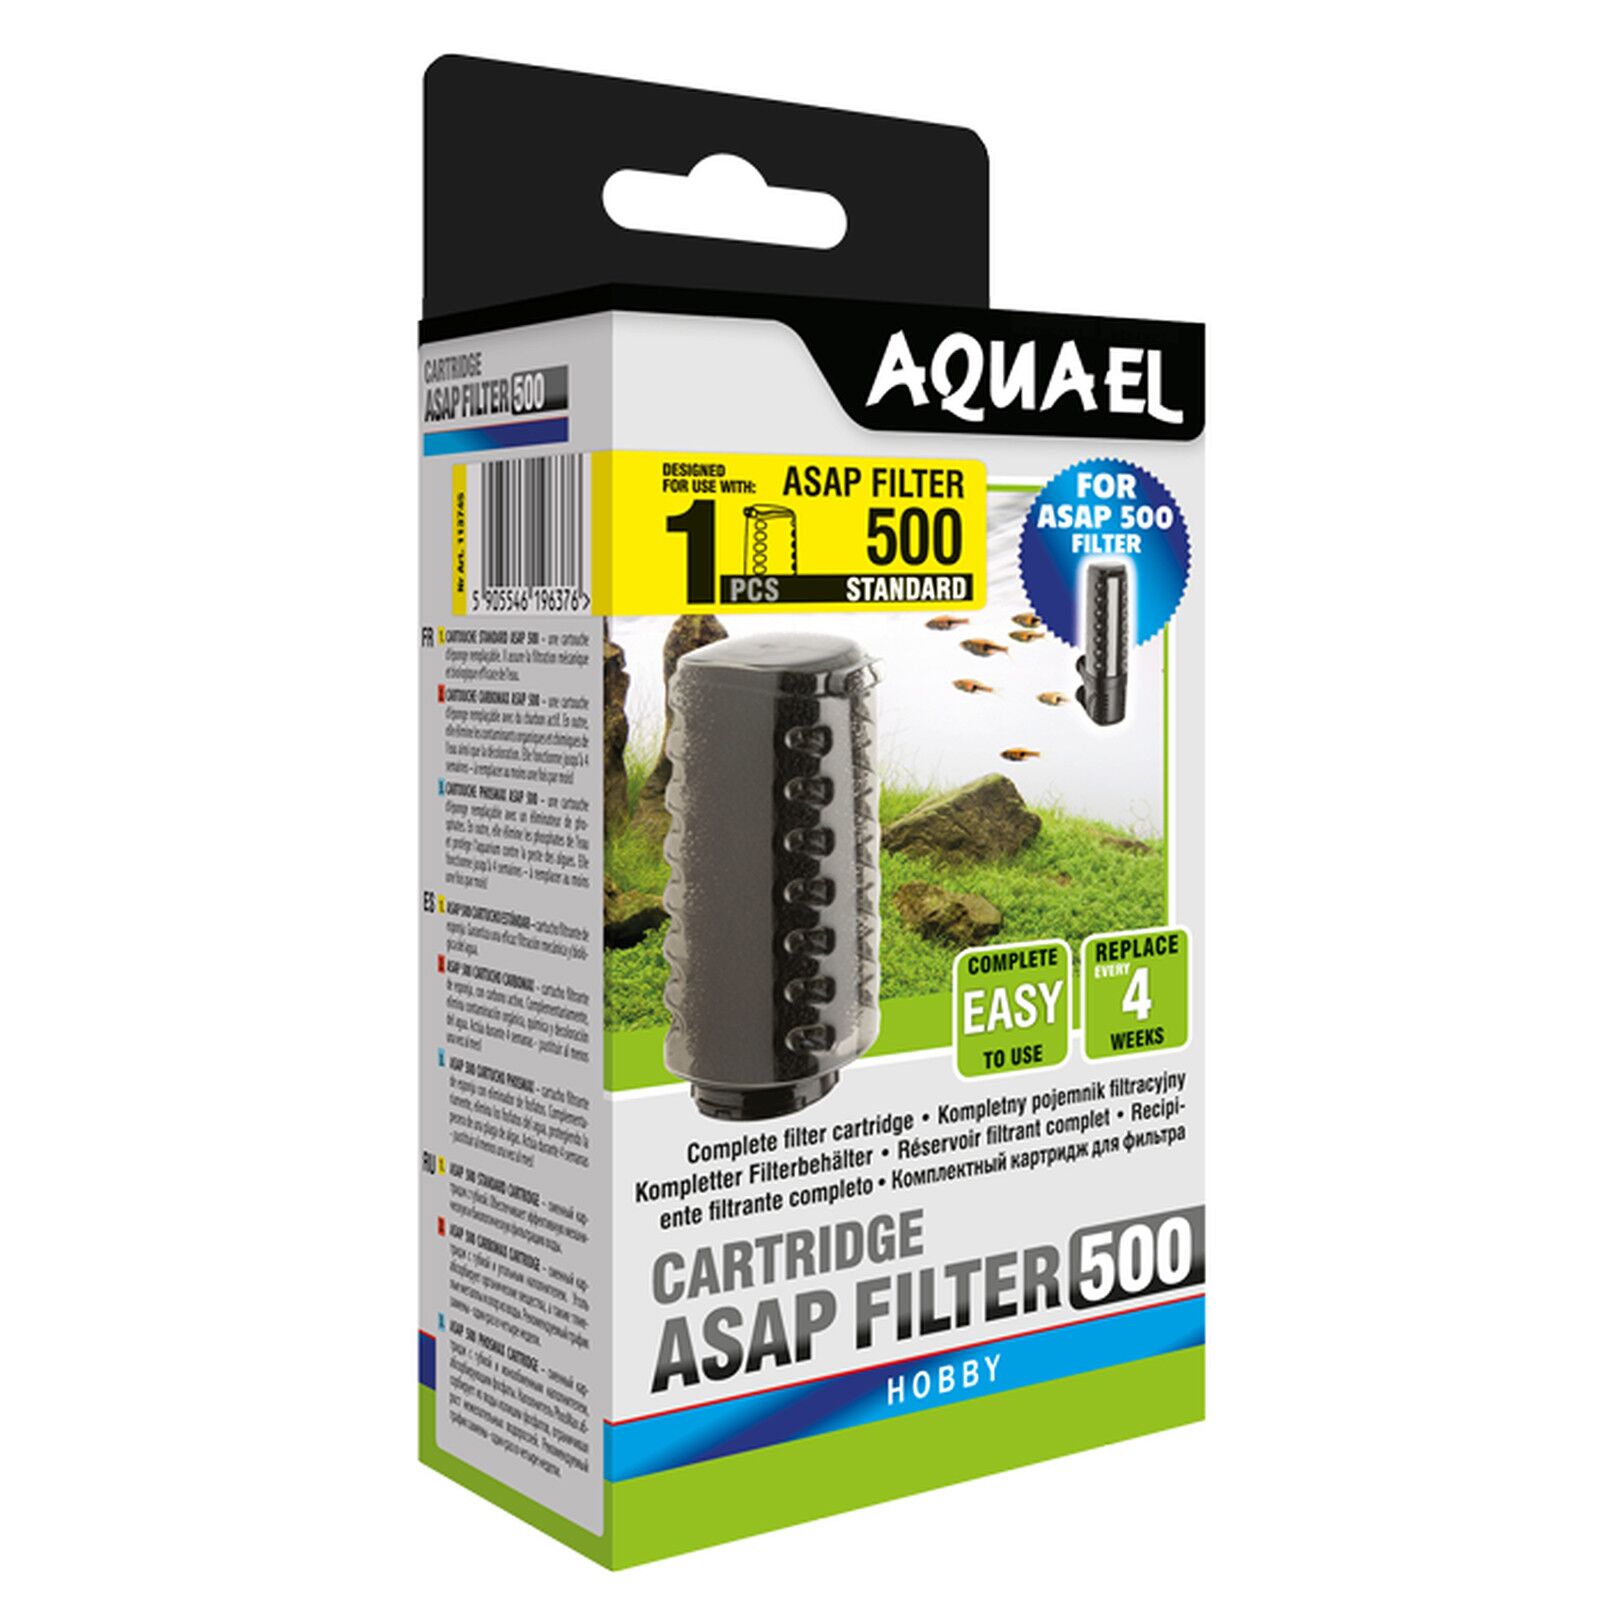 Aquael - Filter Medium Case - ASAP